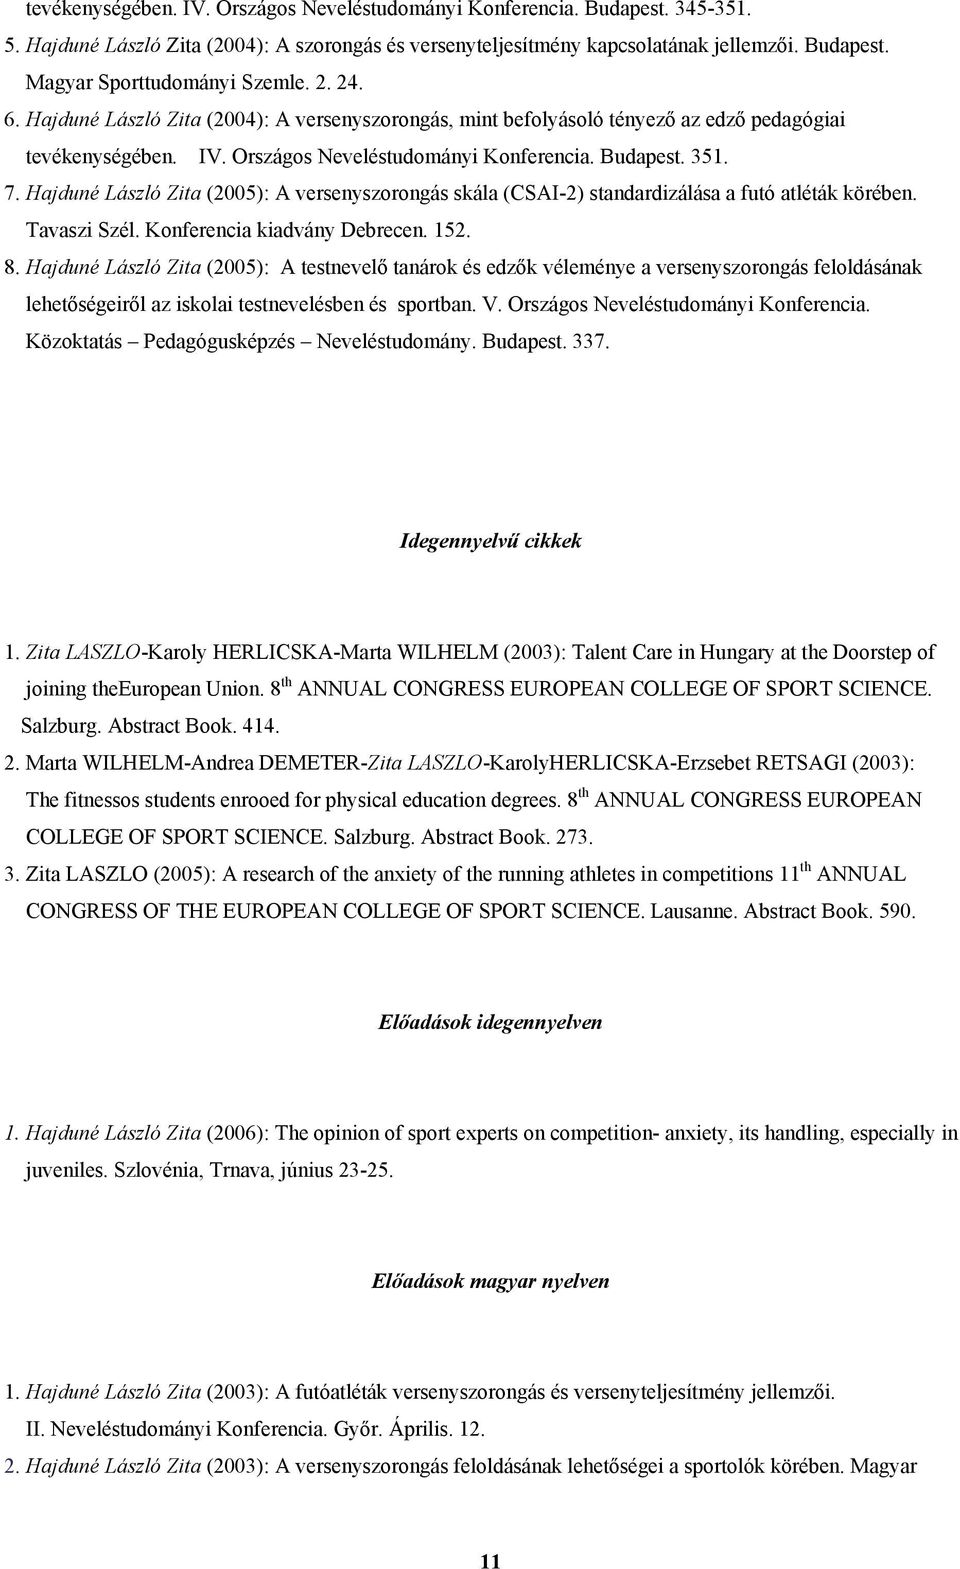 Hajduné László Zita (2005): A versenyszorongás skála (CSAI-2) standardizálása a futó atléták körében. Tavaszi Szél. Konferencia kiadvány Debrecen. 152. 8.